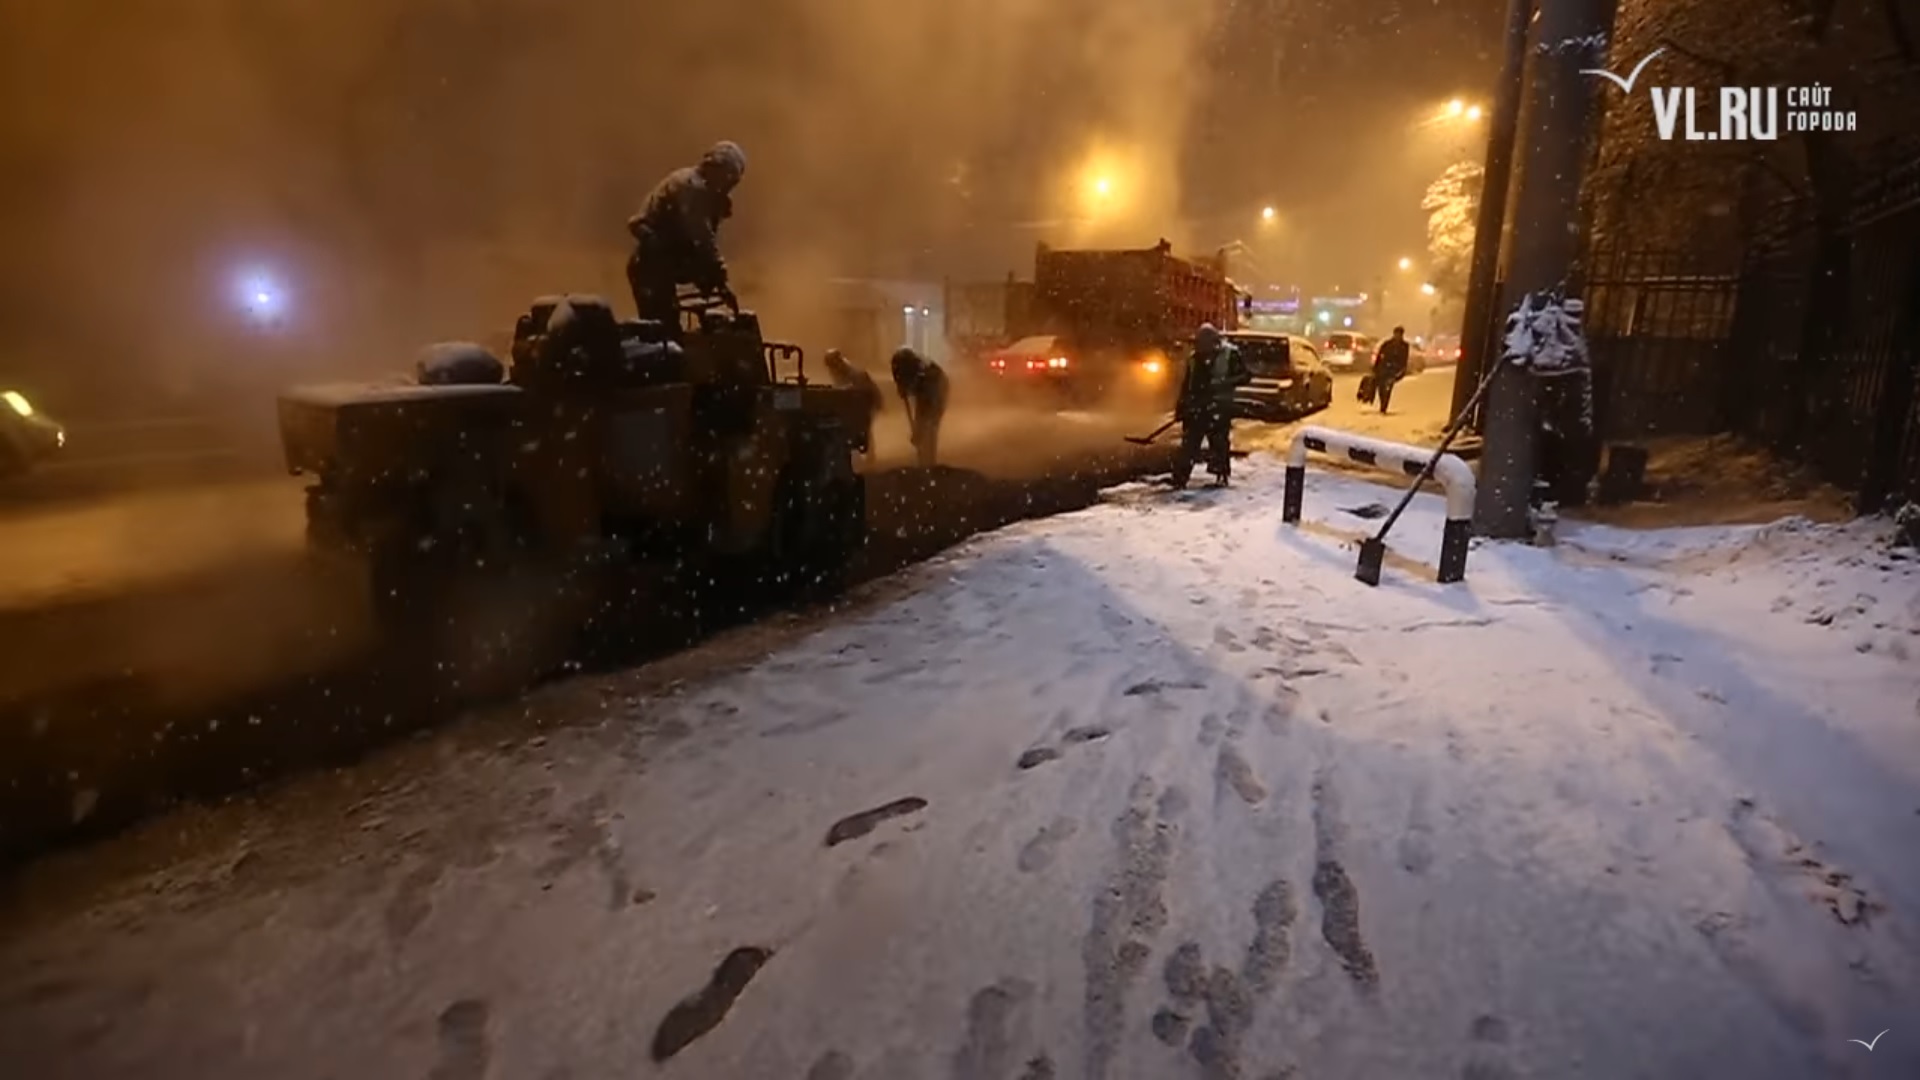 Во Владивостоке дорожные работы, выполненные в снег с нарушением технологии, не приняты и не оплачены